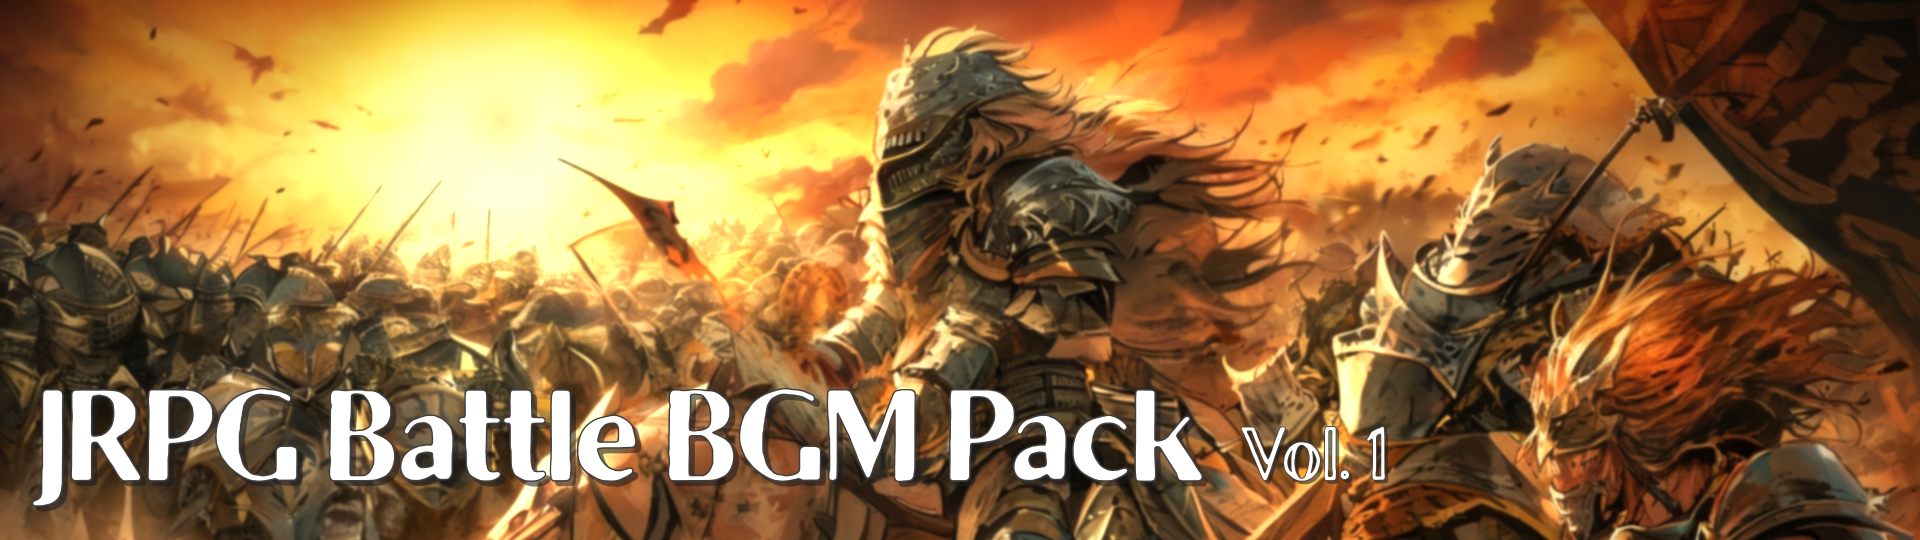 JRPG Battle BGM Pack 1